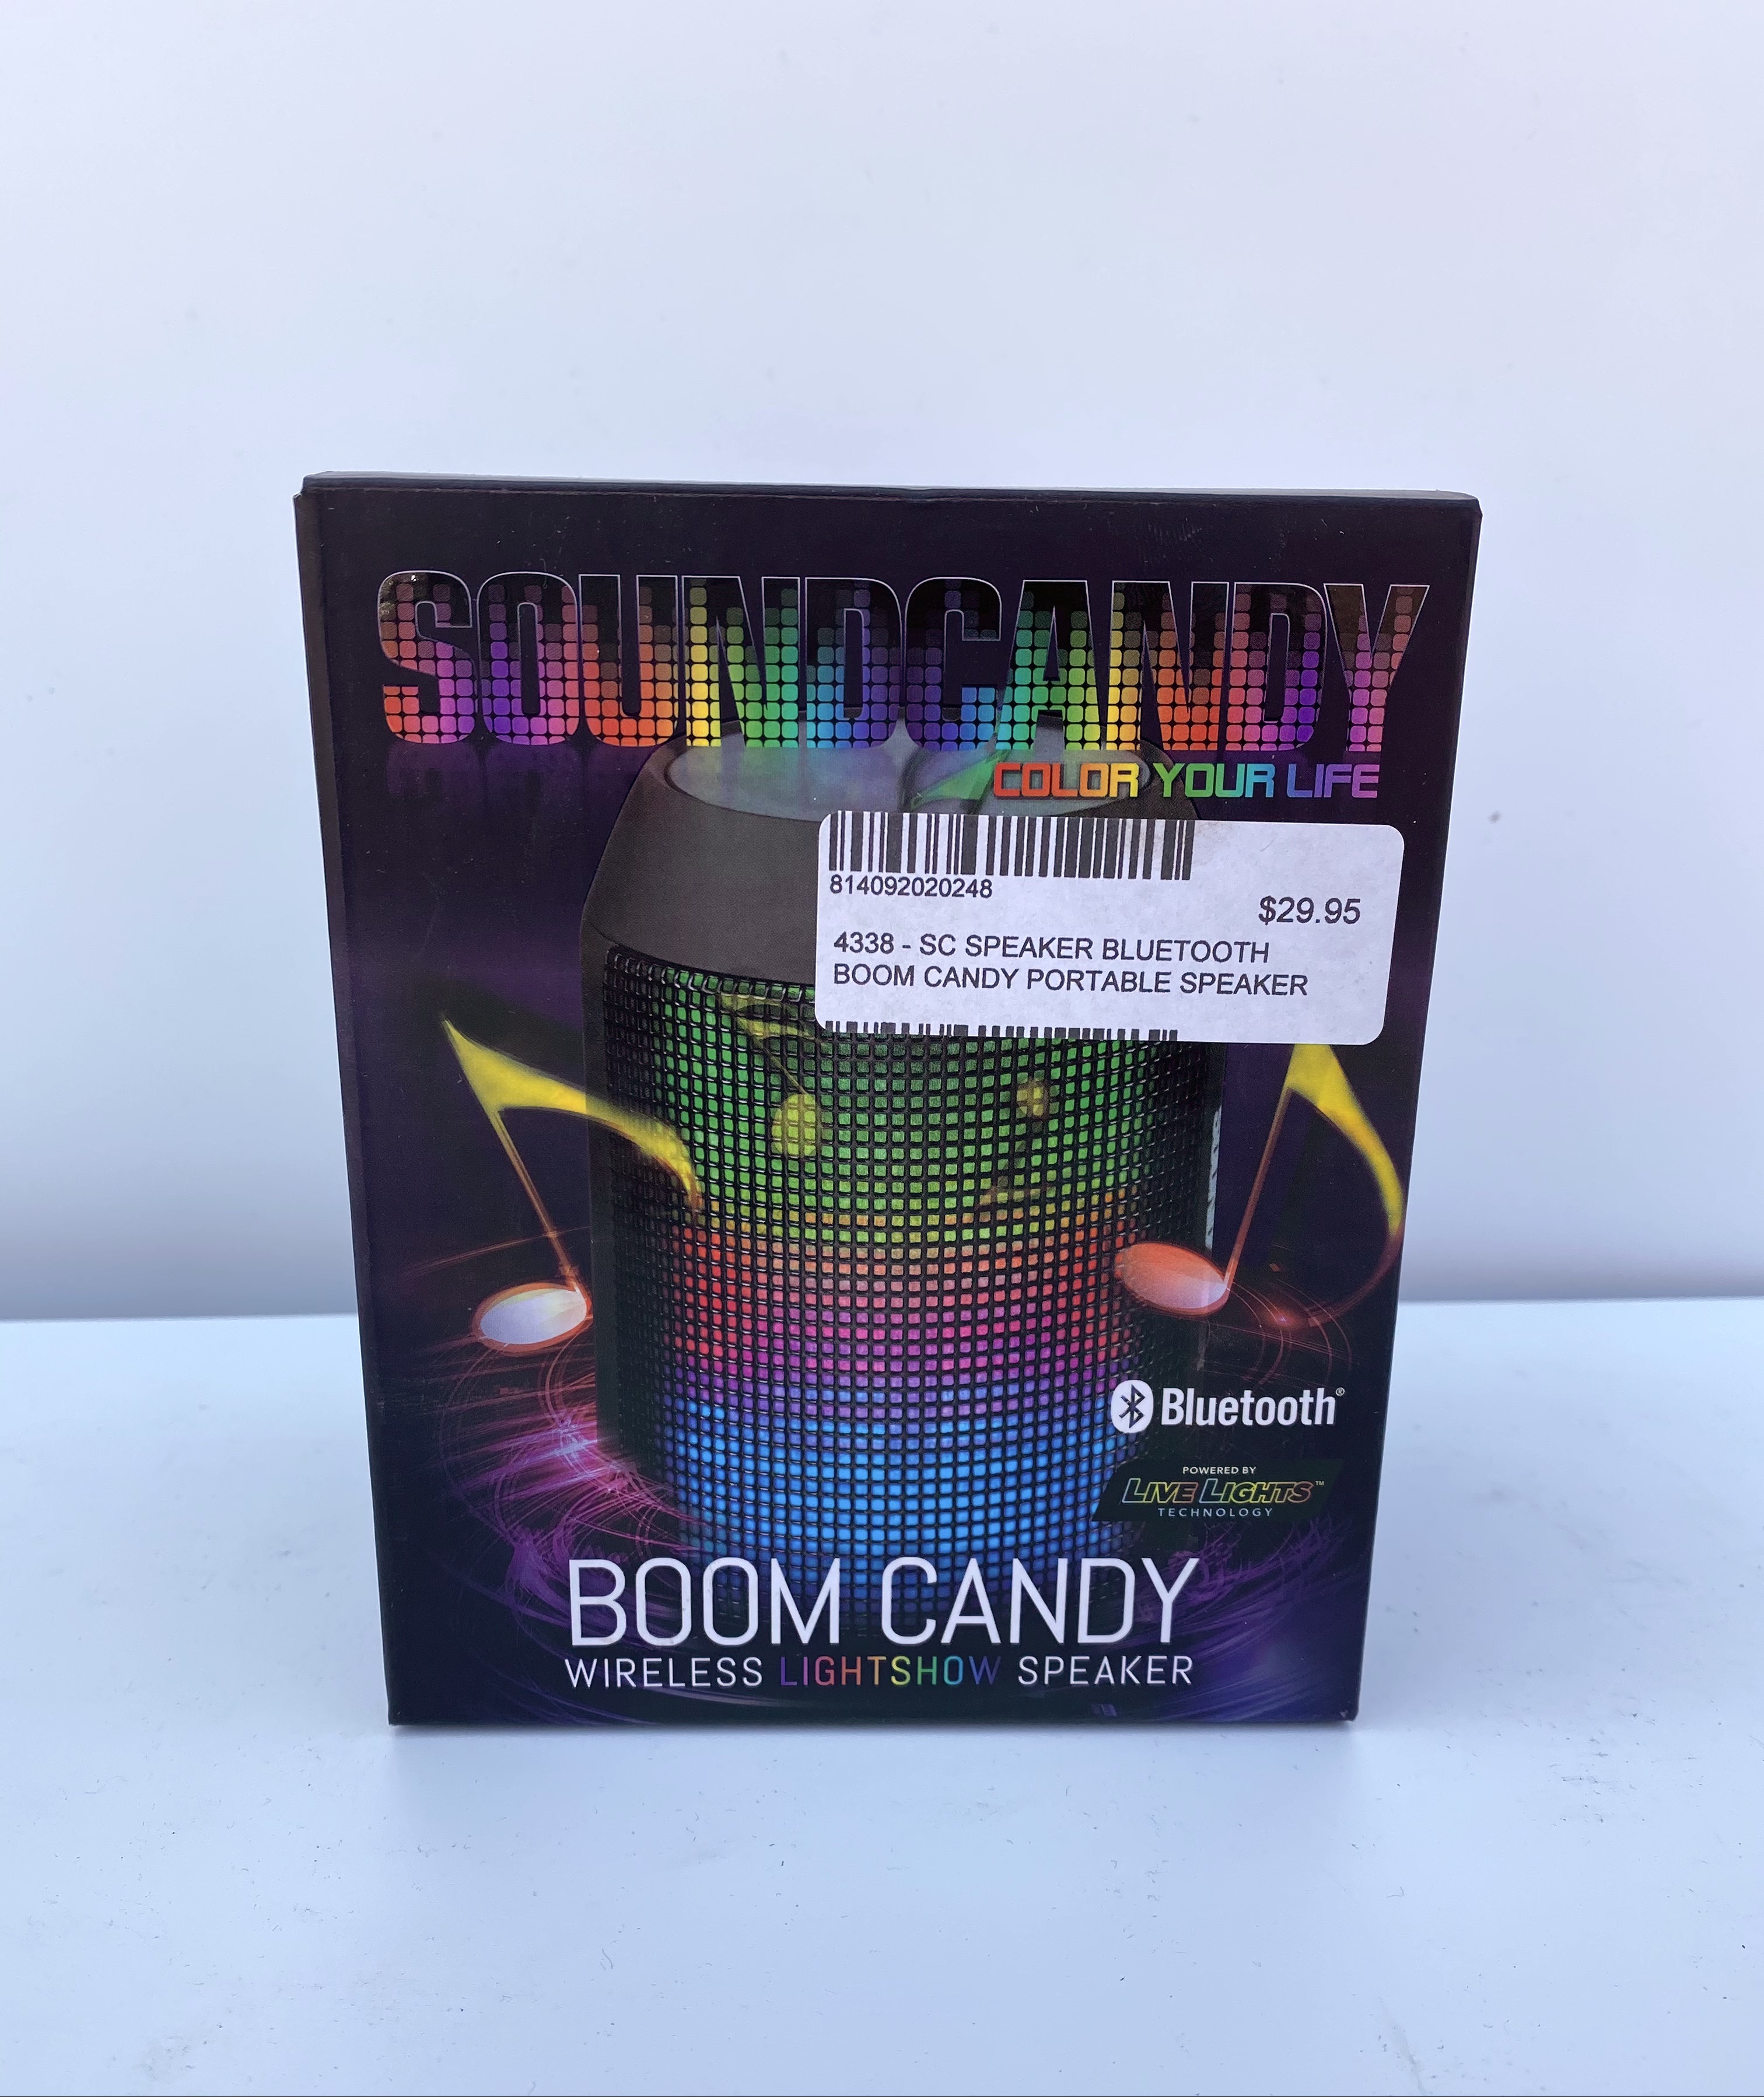 Boom Candy Wireless Lightshow Speaker